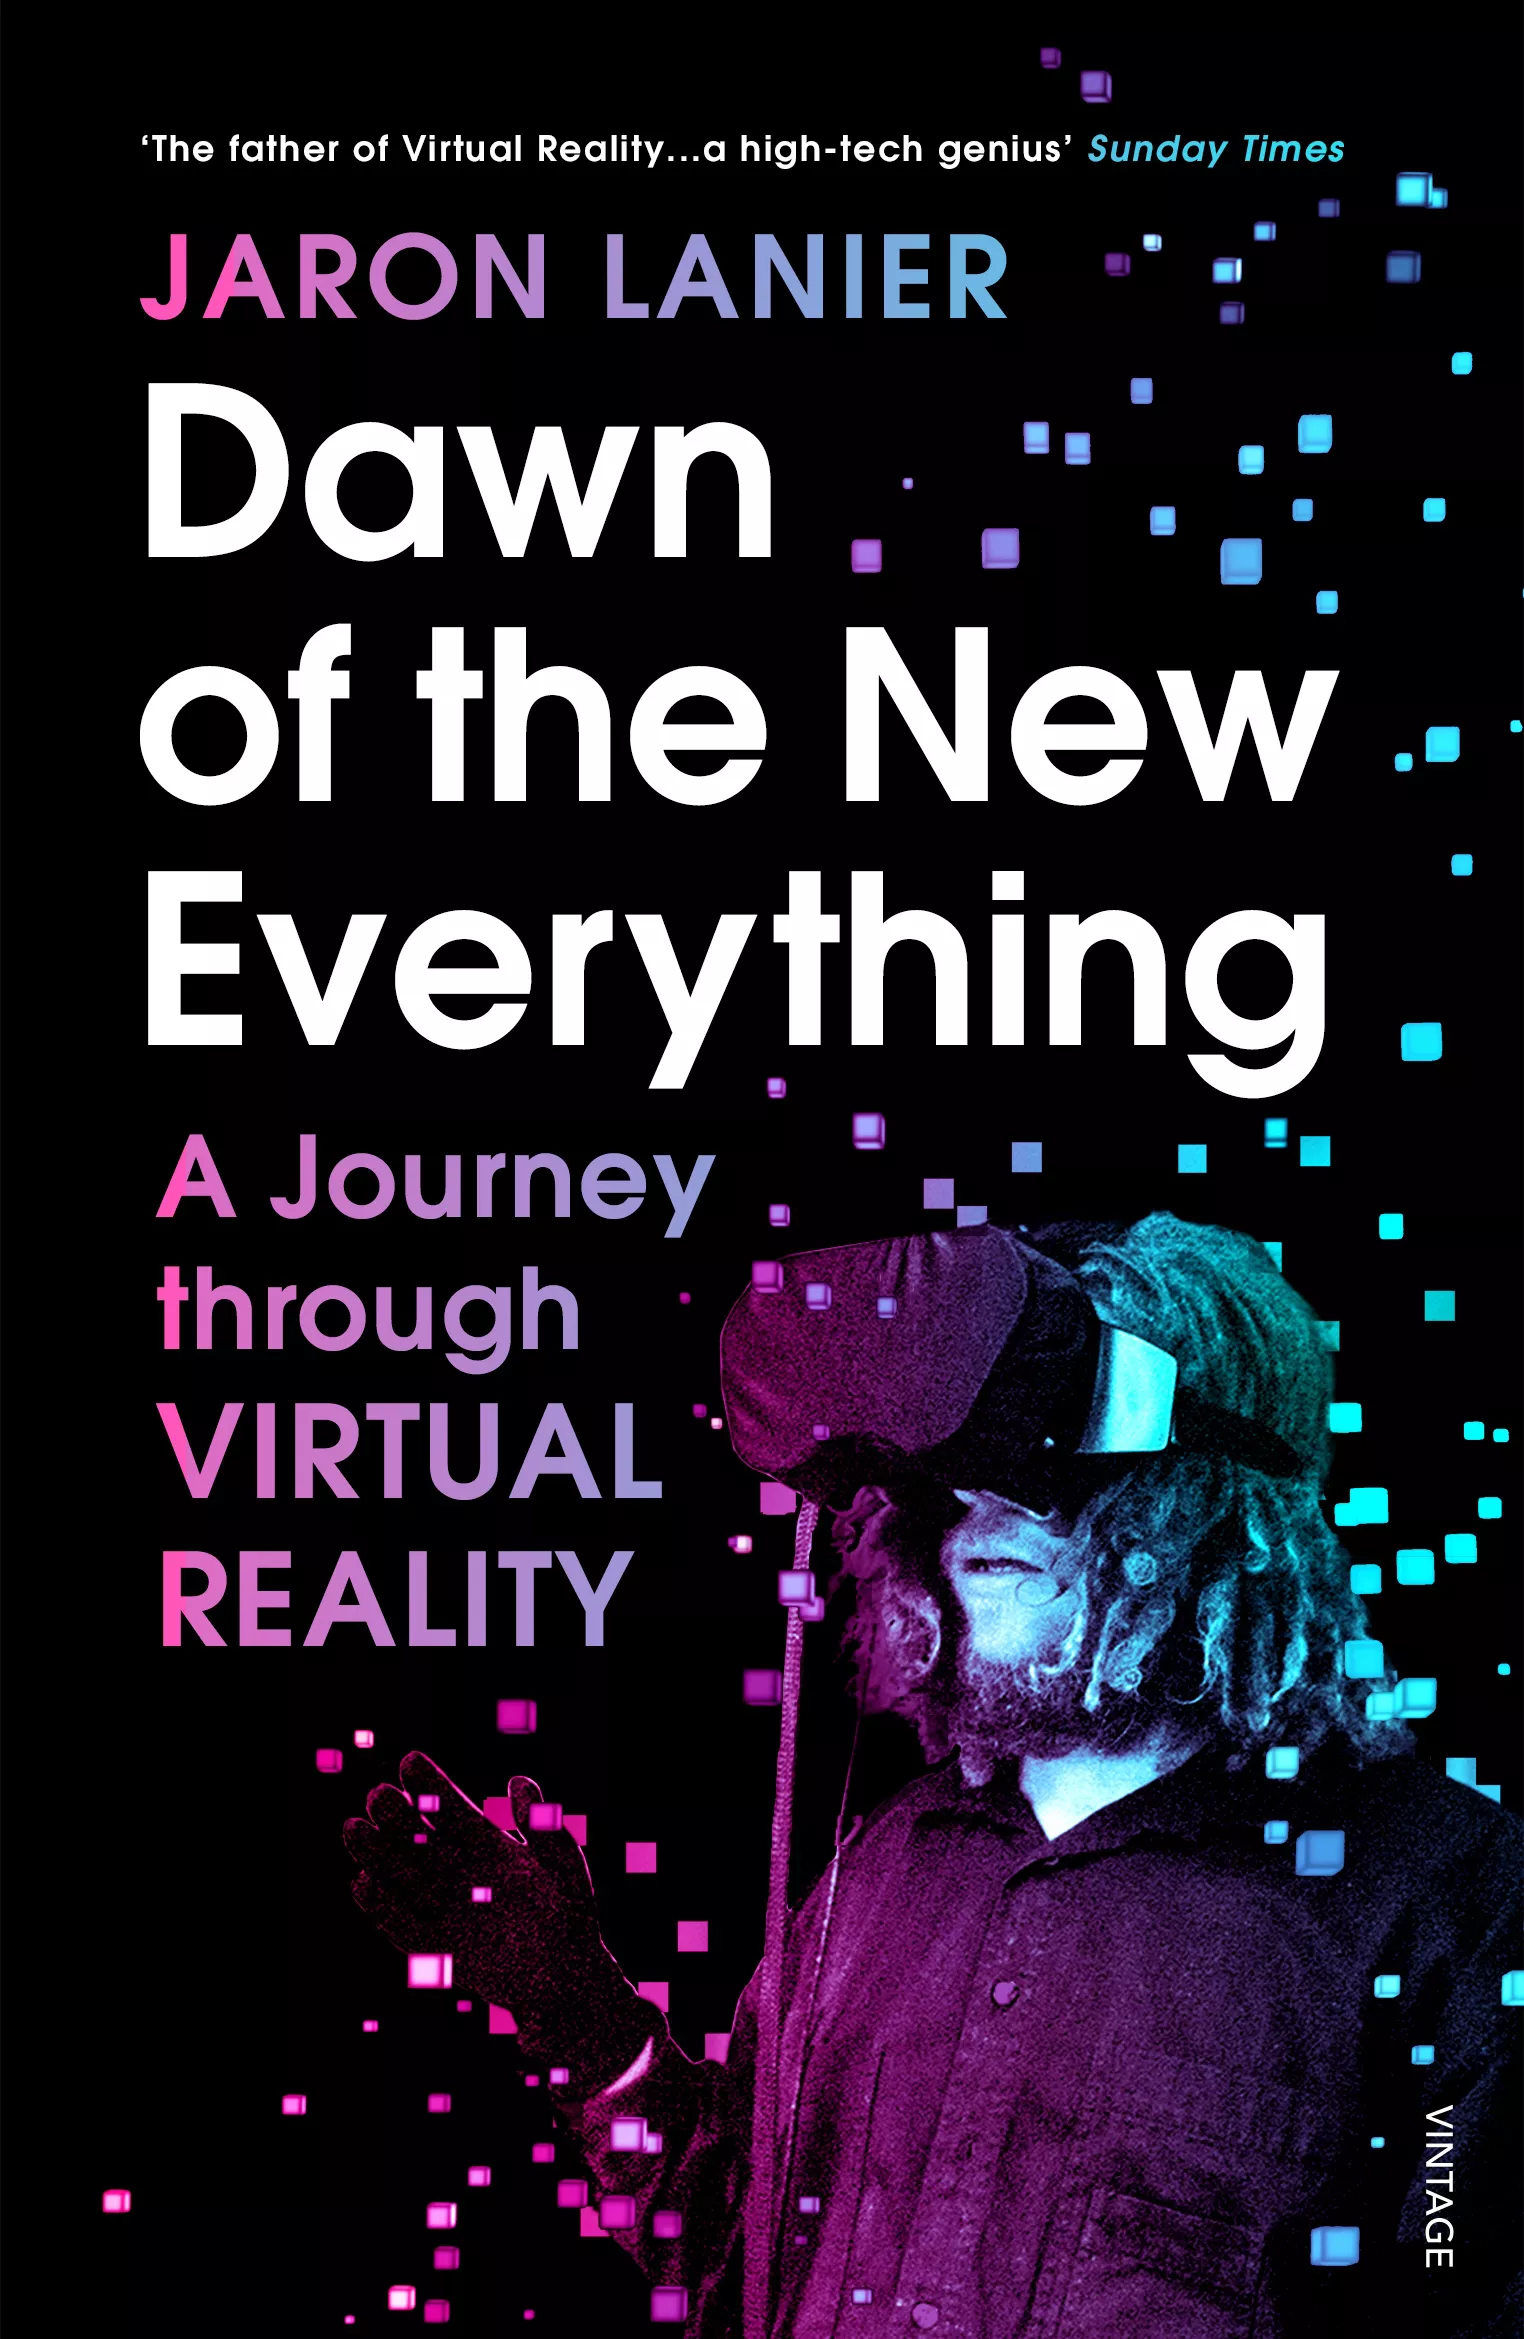 Dawn of the New Everything von Jaron Lanier – ein berühmtes Virtual-Reality-Buch